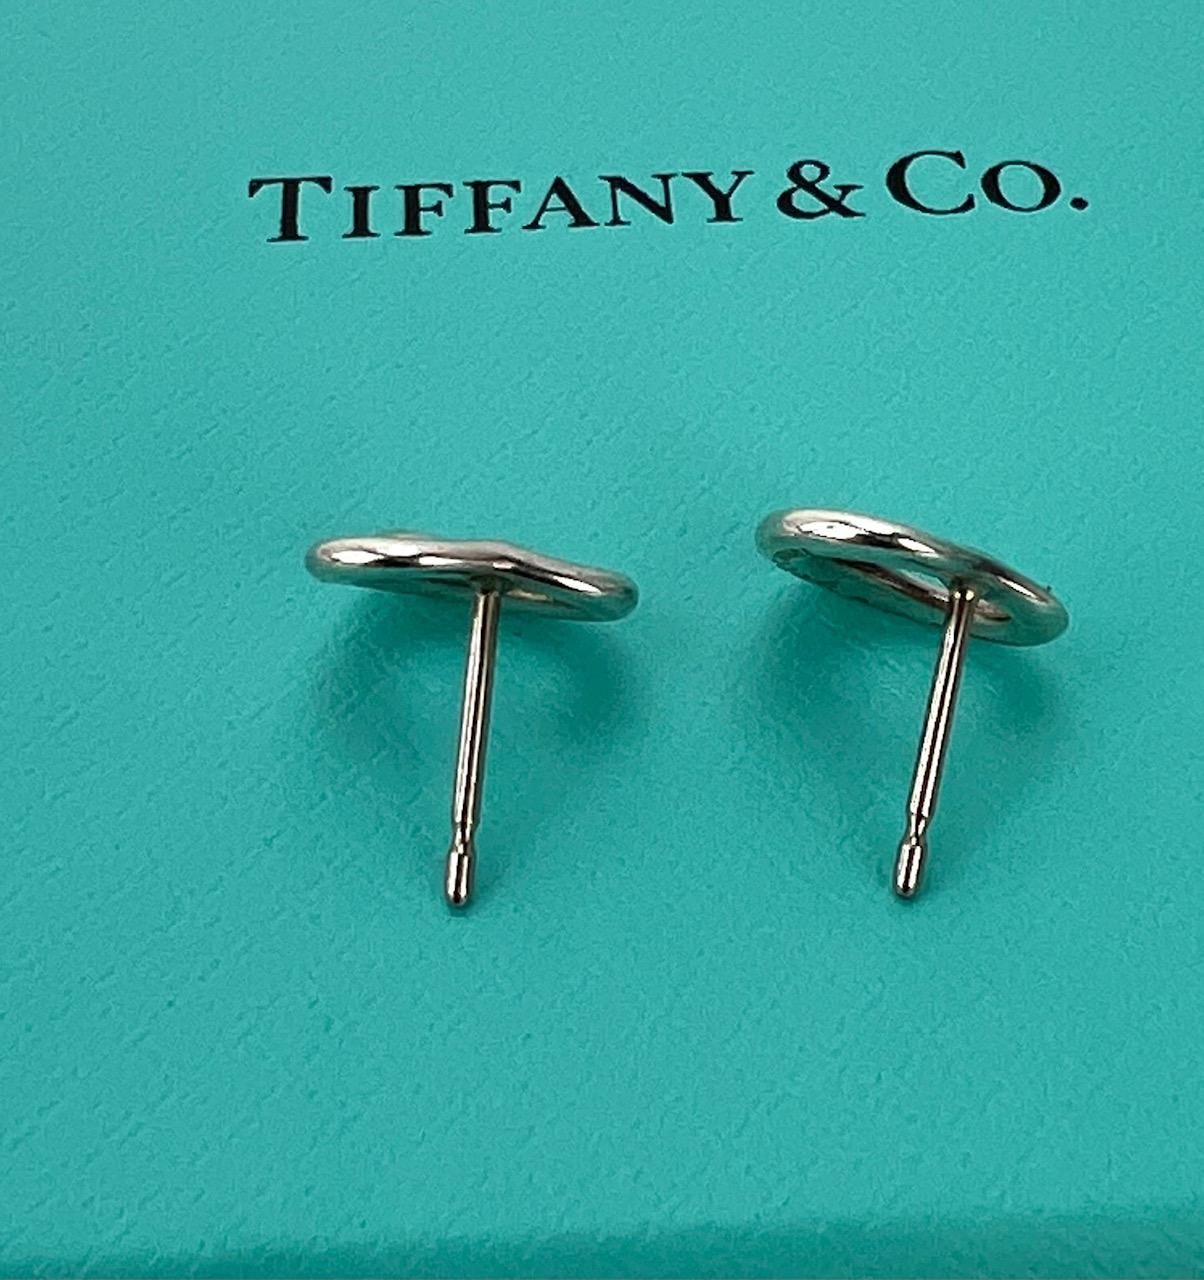  TIFFANY Open Heart Stud Earrings in Sterling Silver 925 Elsa Peretti  7